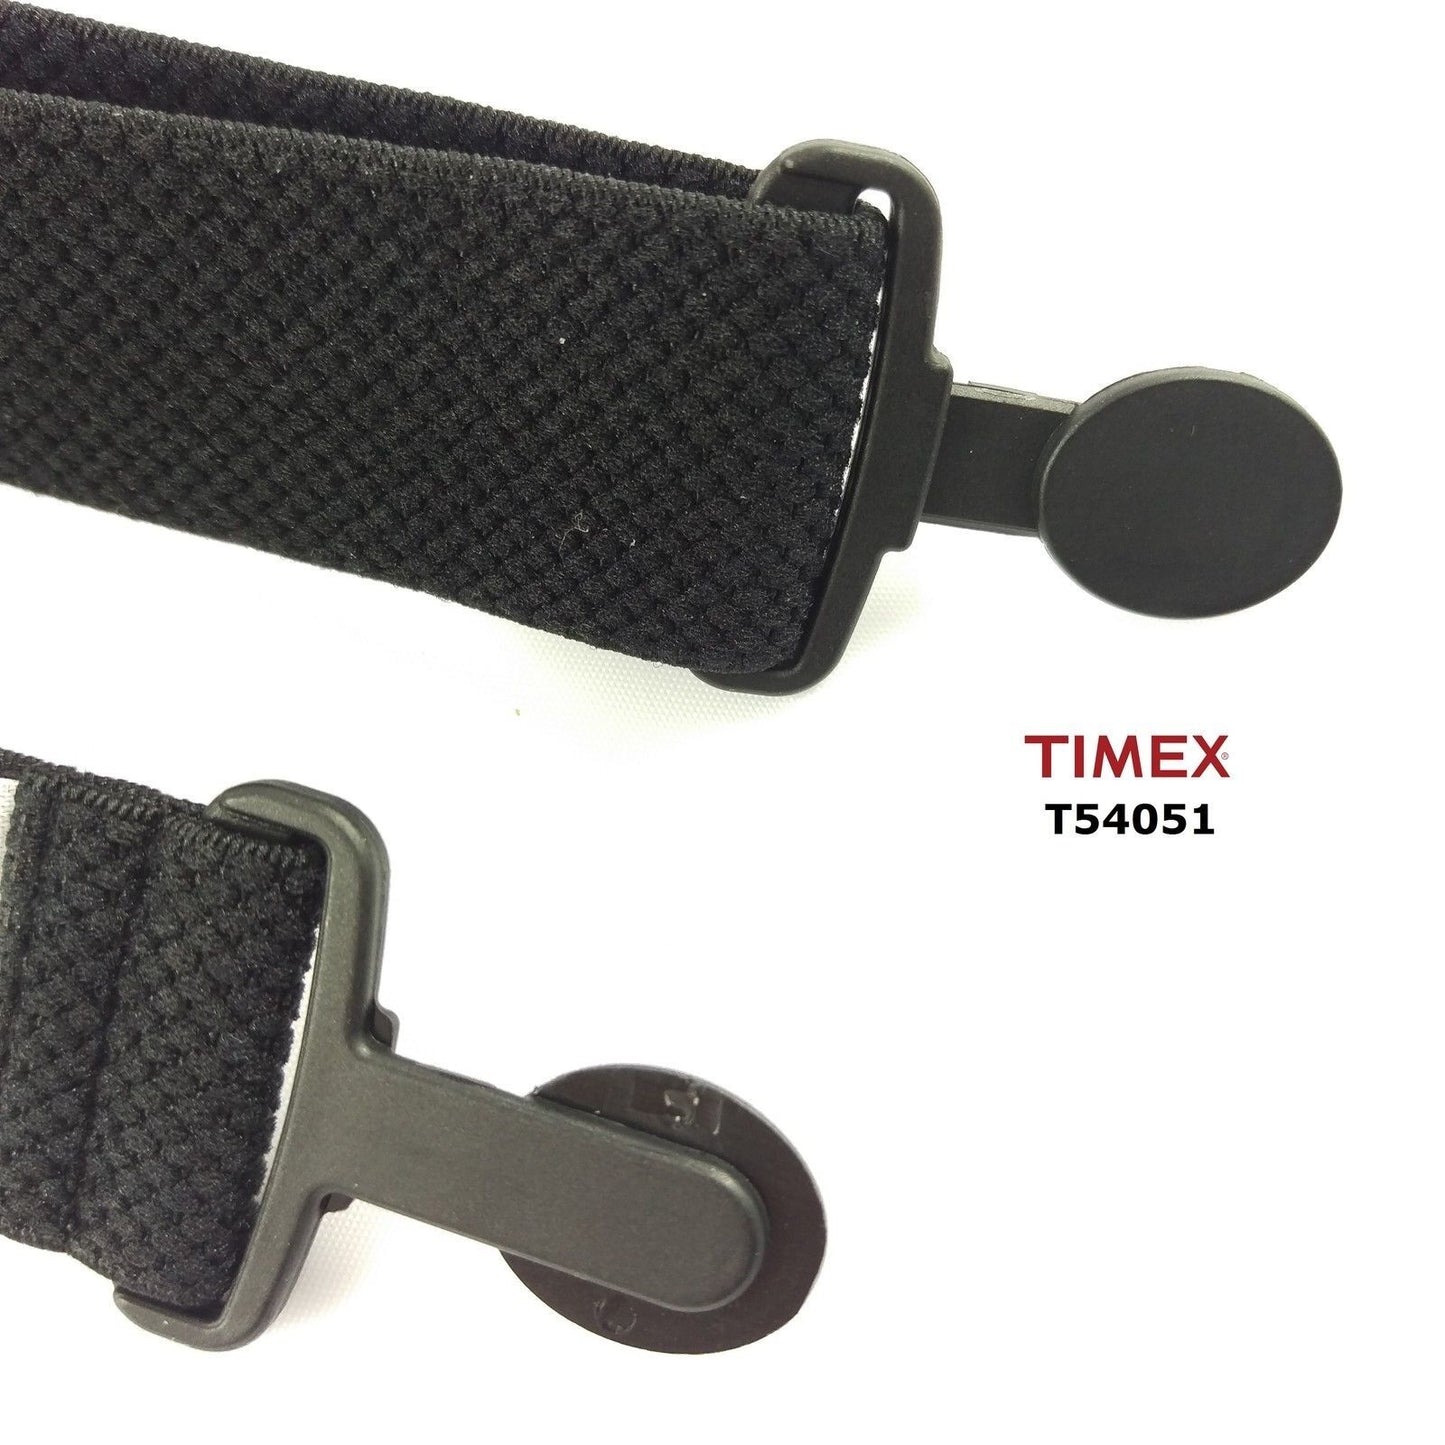 Timex Textil Brustgurt - Bodylink - Garmin - 25mm, einstellbar 40-85 cm - T54051